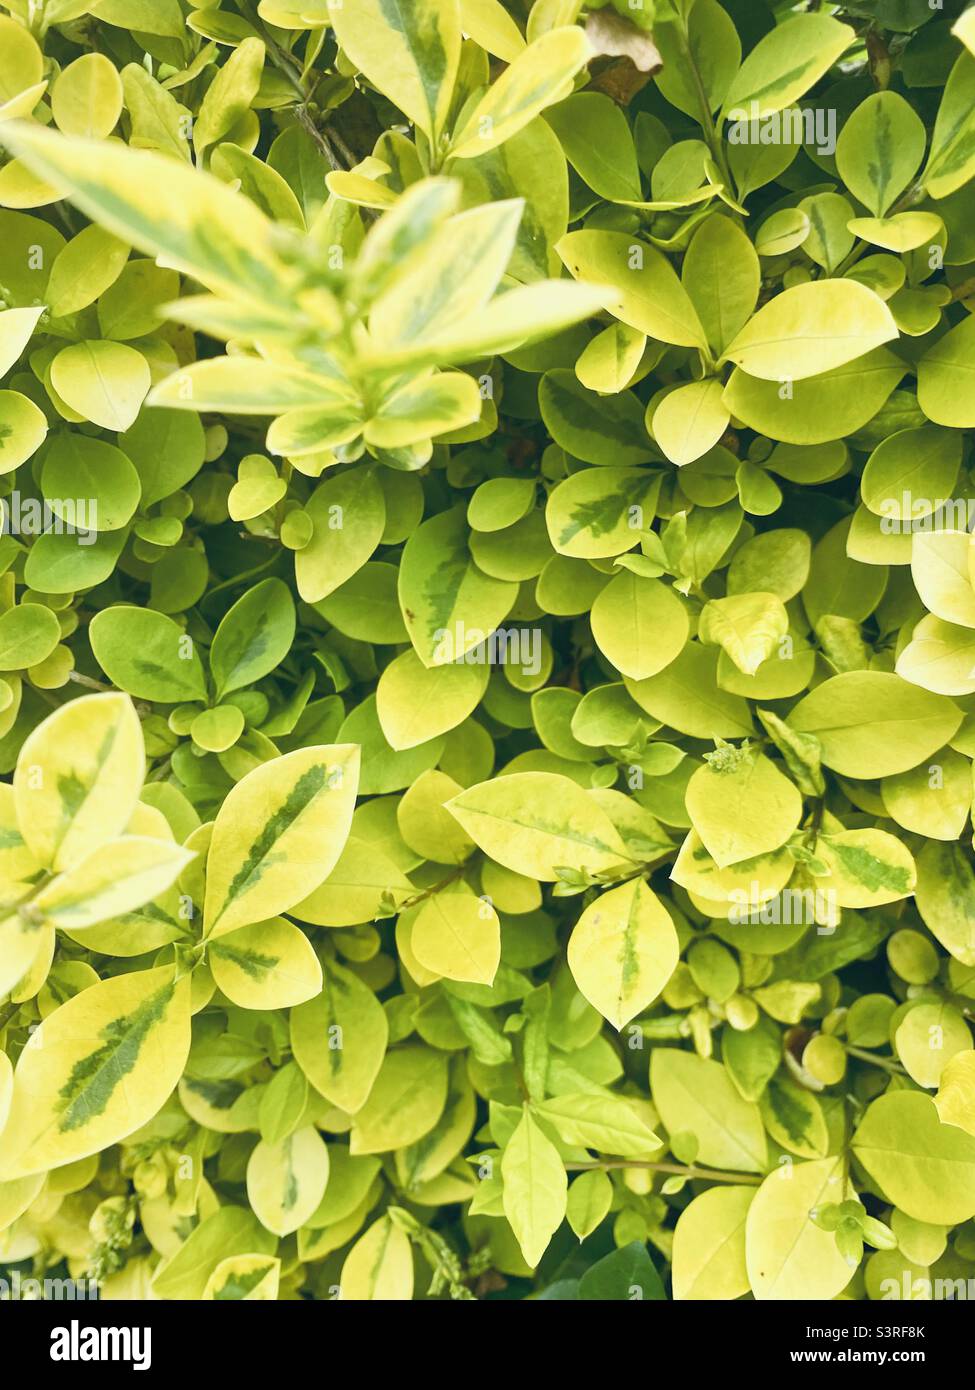 Ligustrum ovalifolium 'Aureum' - Golden Privet hedge plant Stock Photo